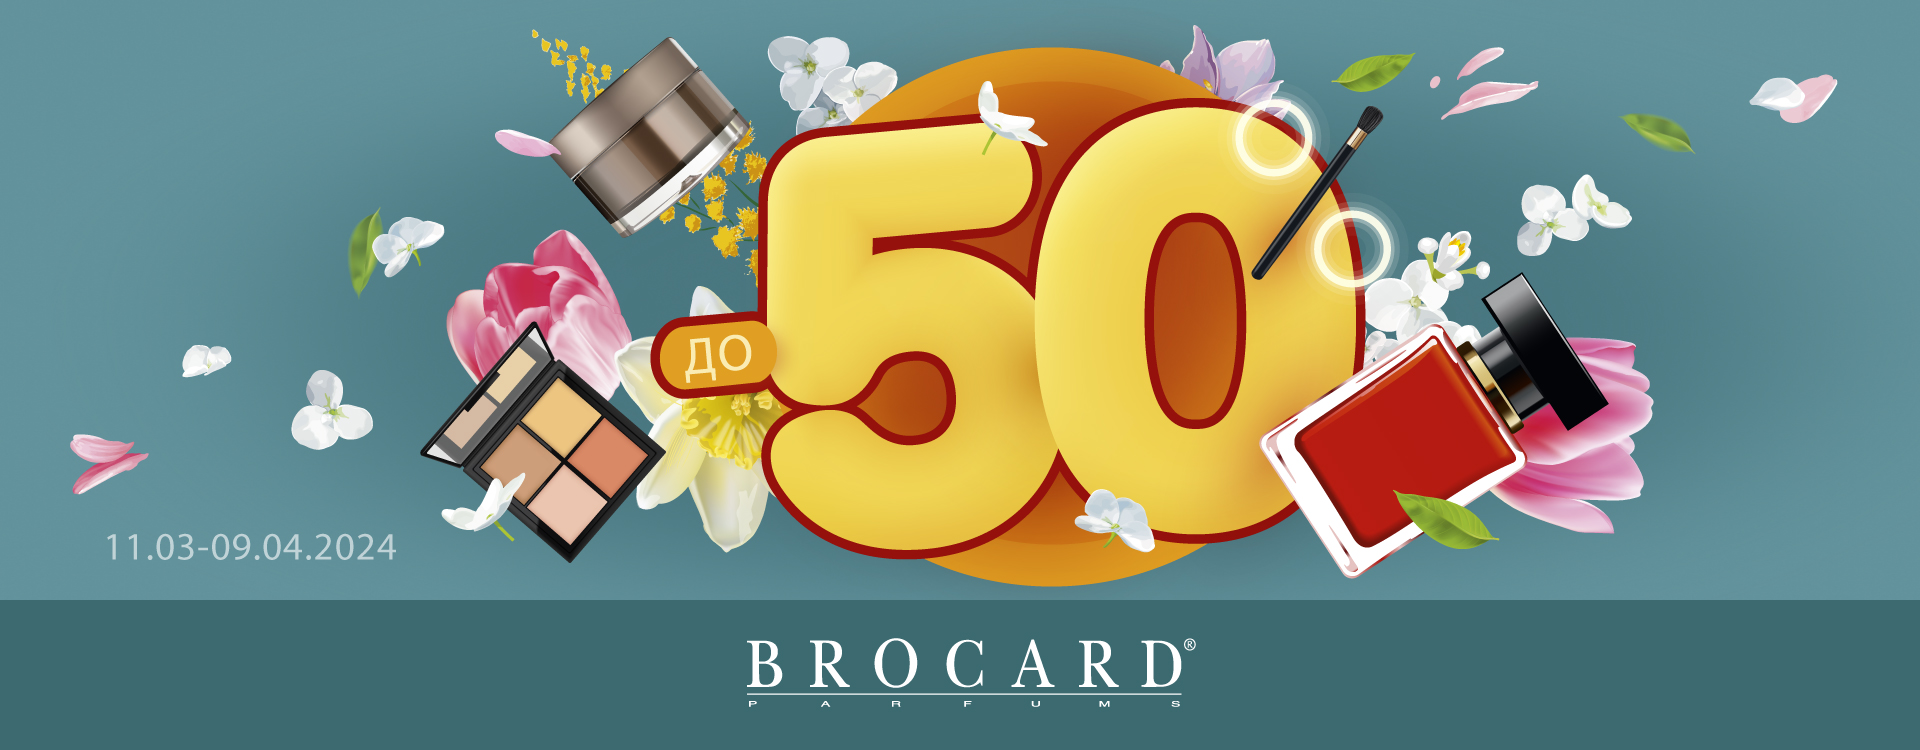 Seasonal discounts up to 50% at BROCARD